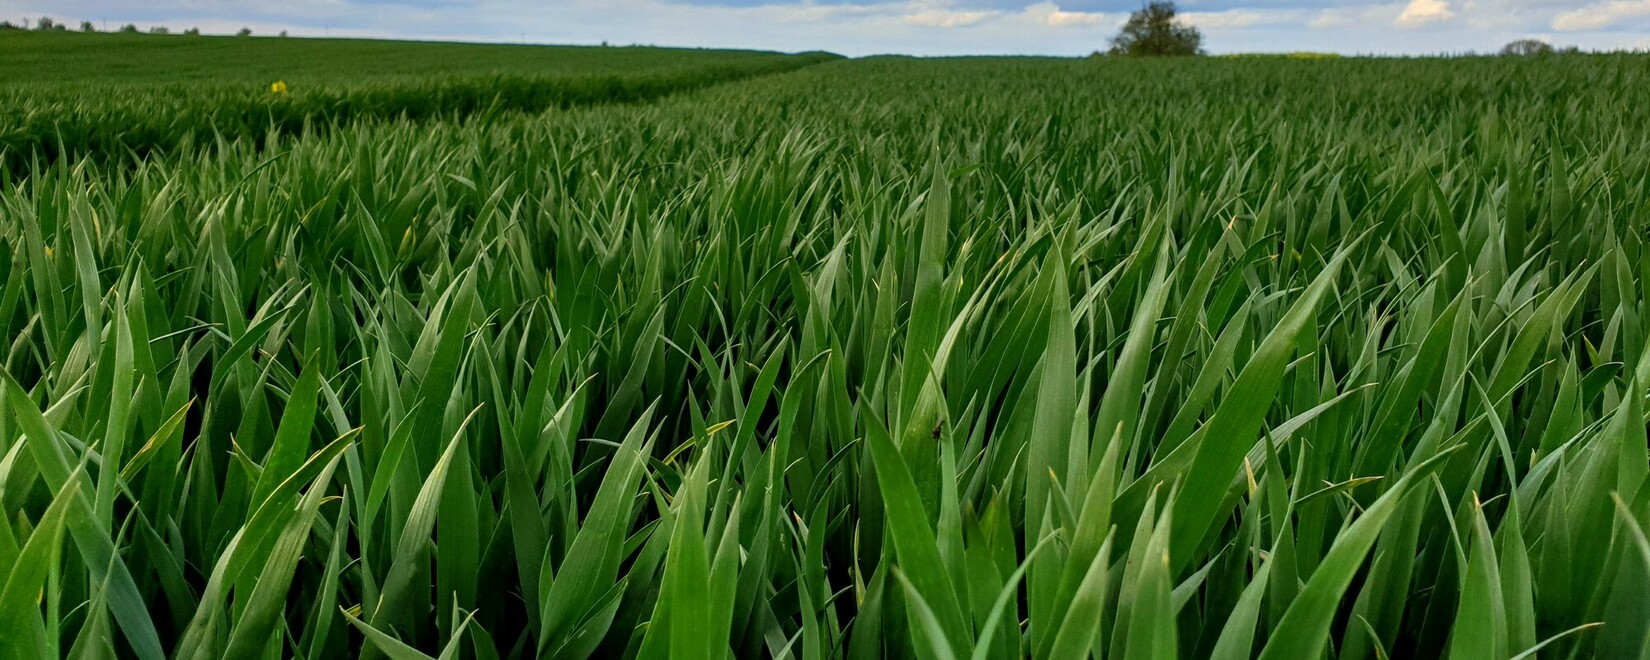 Мировой рынок зерна: фьючерсы на пшеницу выросли во вторник, на кукурузу и сою упали